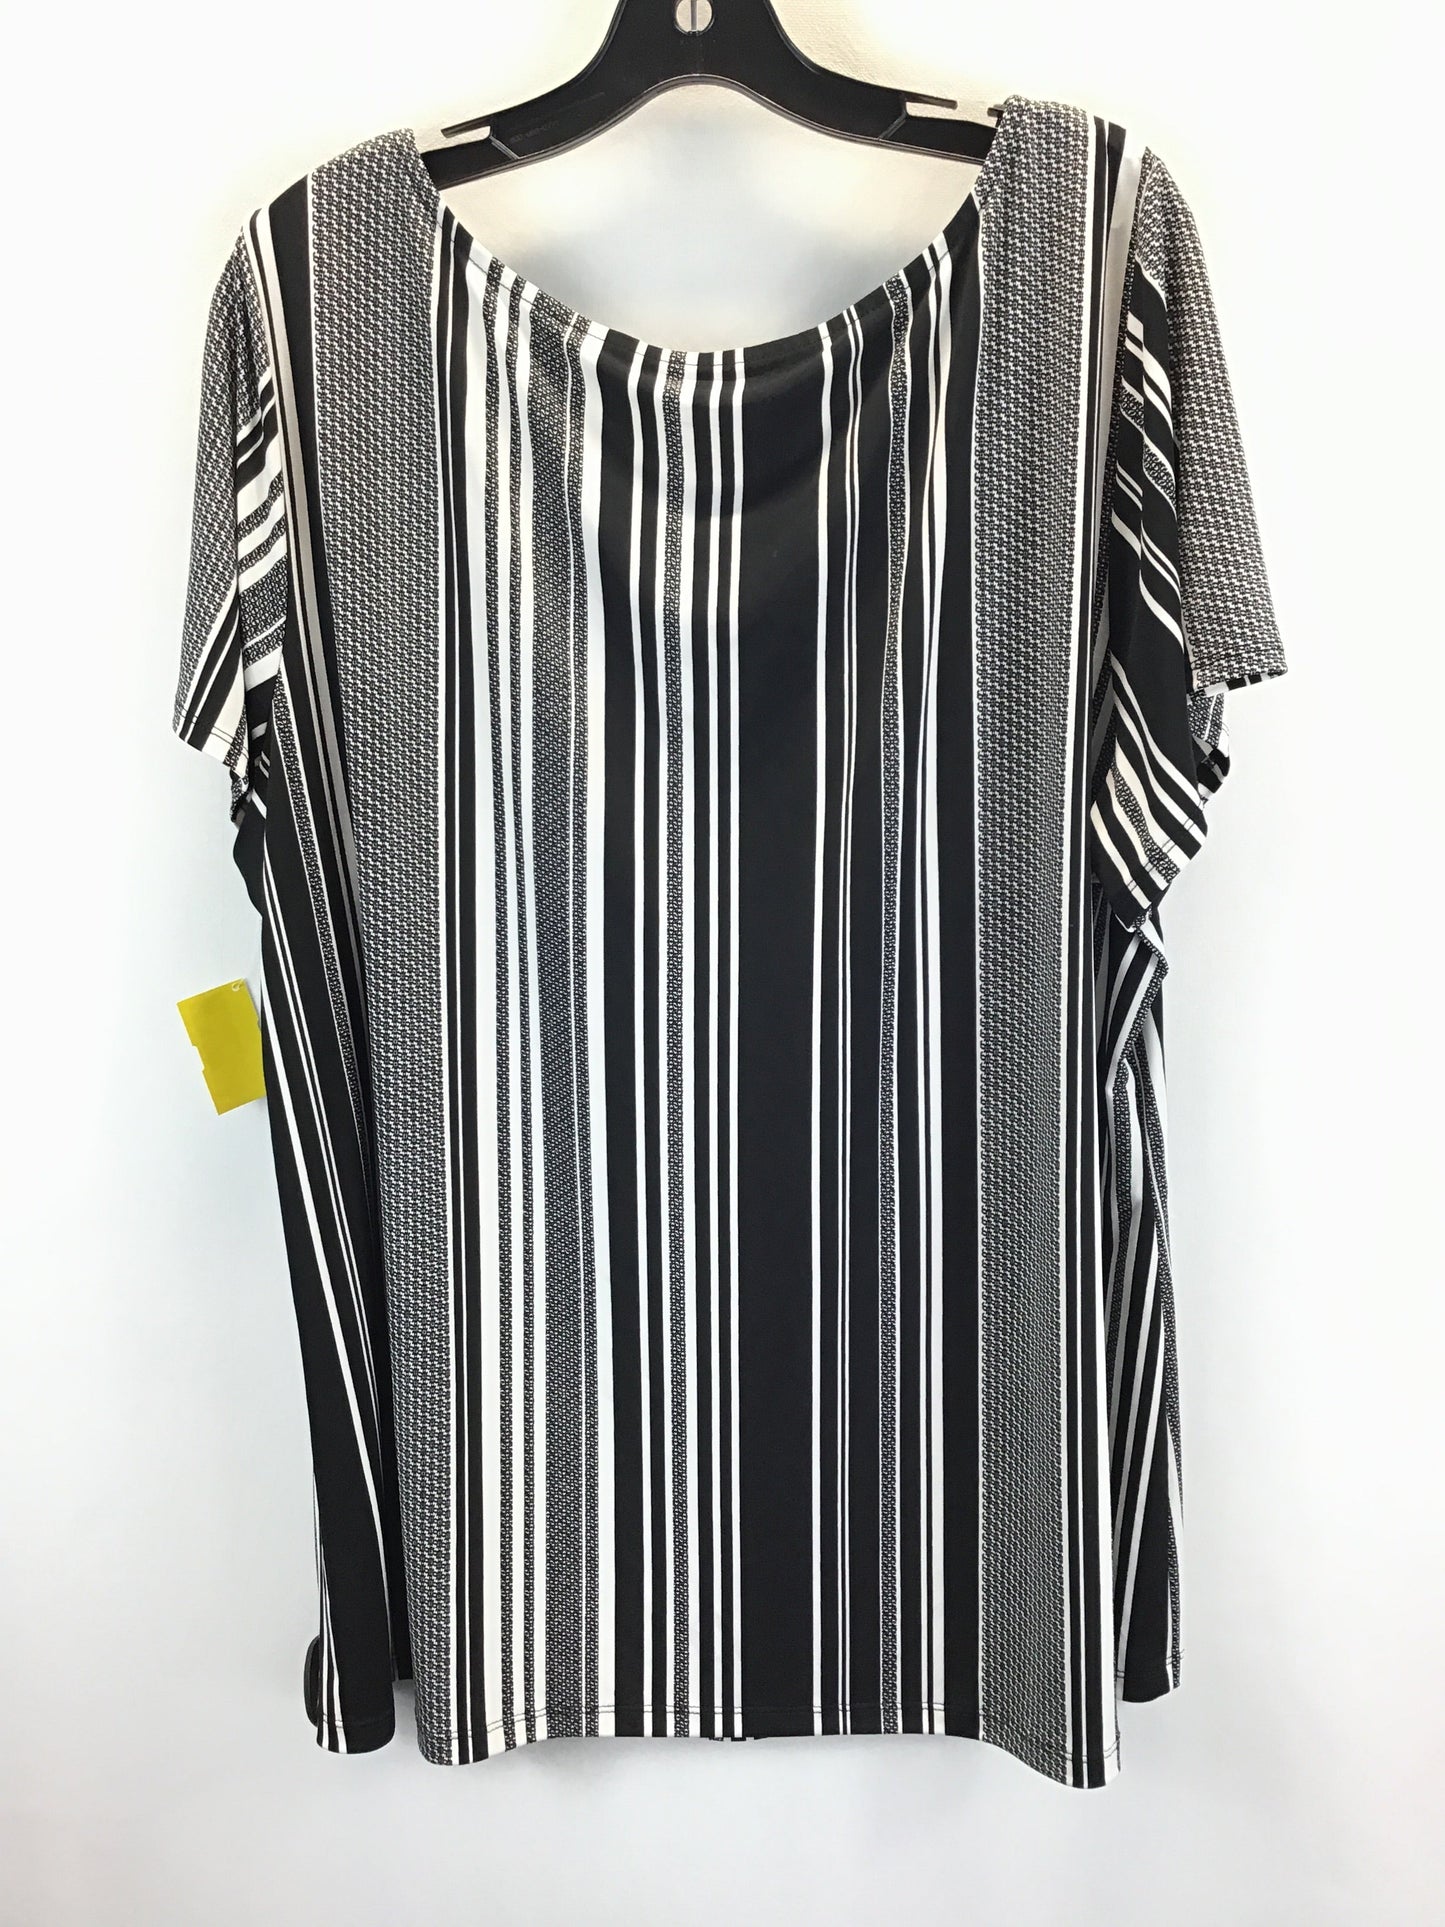 Black & White Top Short Sleeve Worthington, Size 3x